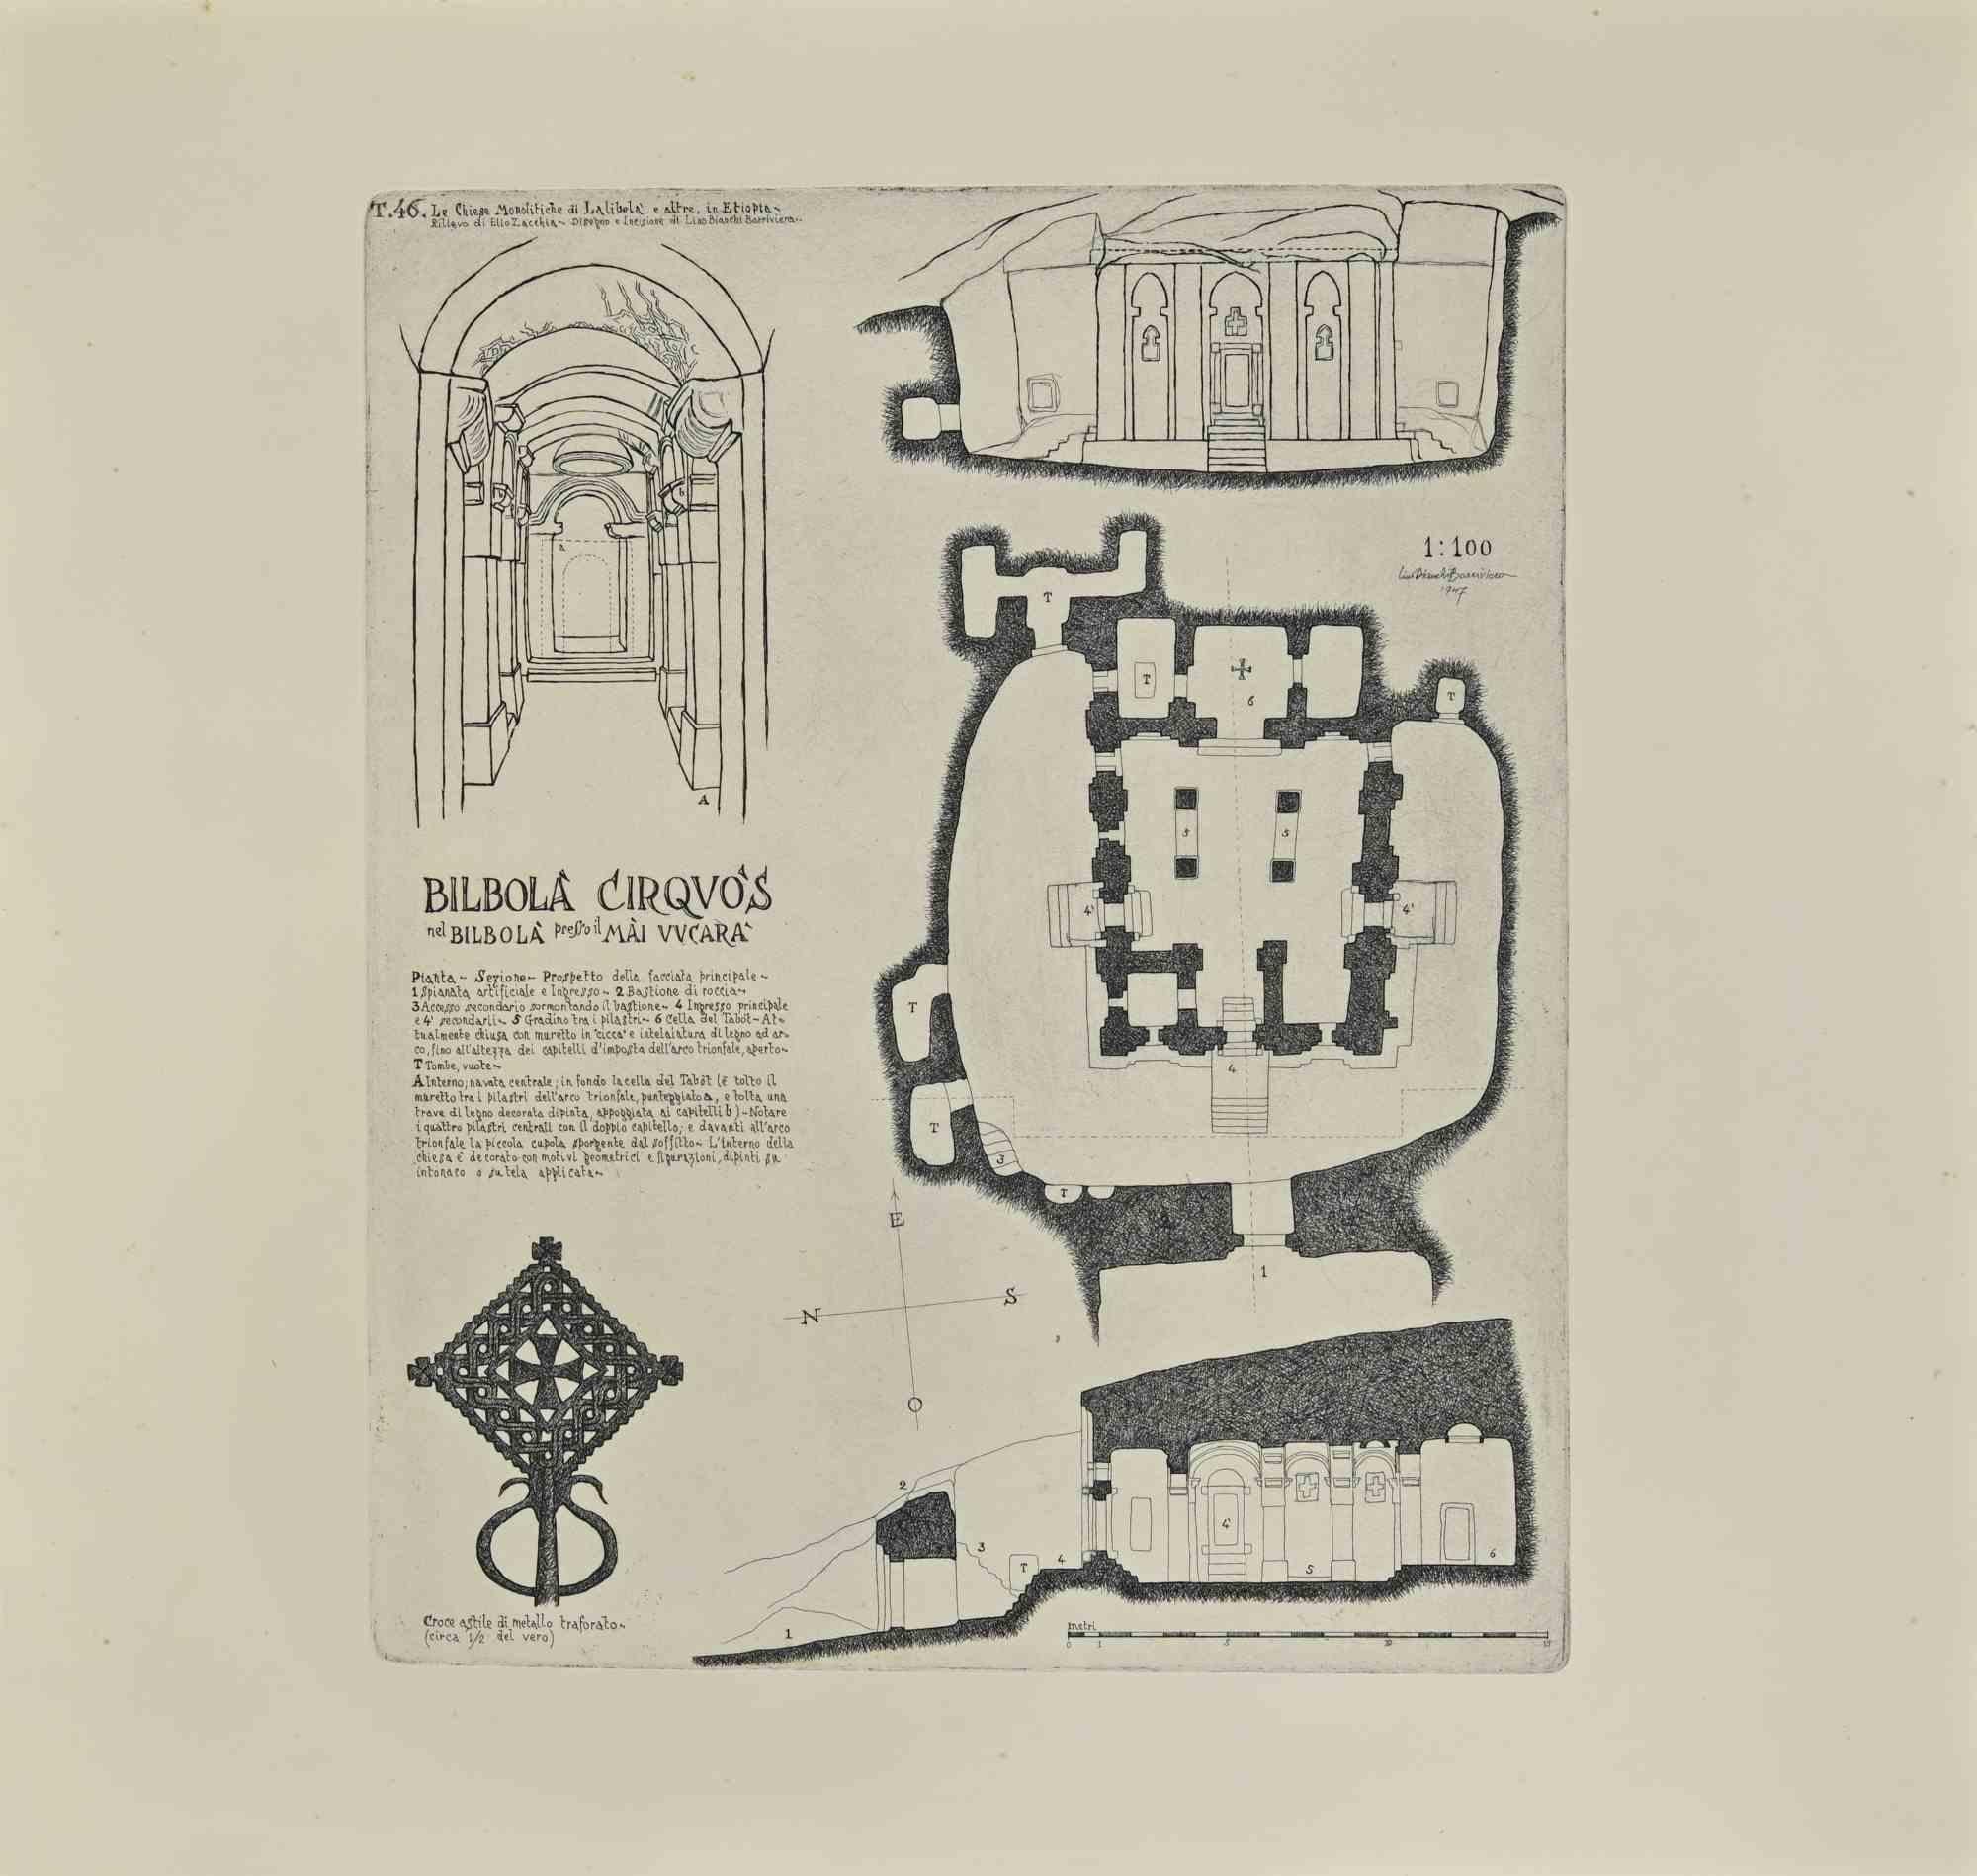 Bilbola' Kircos ist ein modernes Kunstwerk von Lino Bianchi Barriviera aus dem Jahr 1947.

Schwarze und weiße Radierung.

Signiert und datiert auf der Platte.

Tafel n.46 (wie am oberen Rand angegeben).

Das Kunstwerk stammt aus der Serie "Die